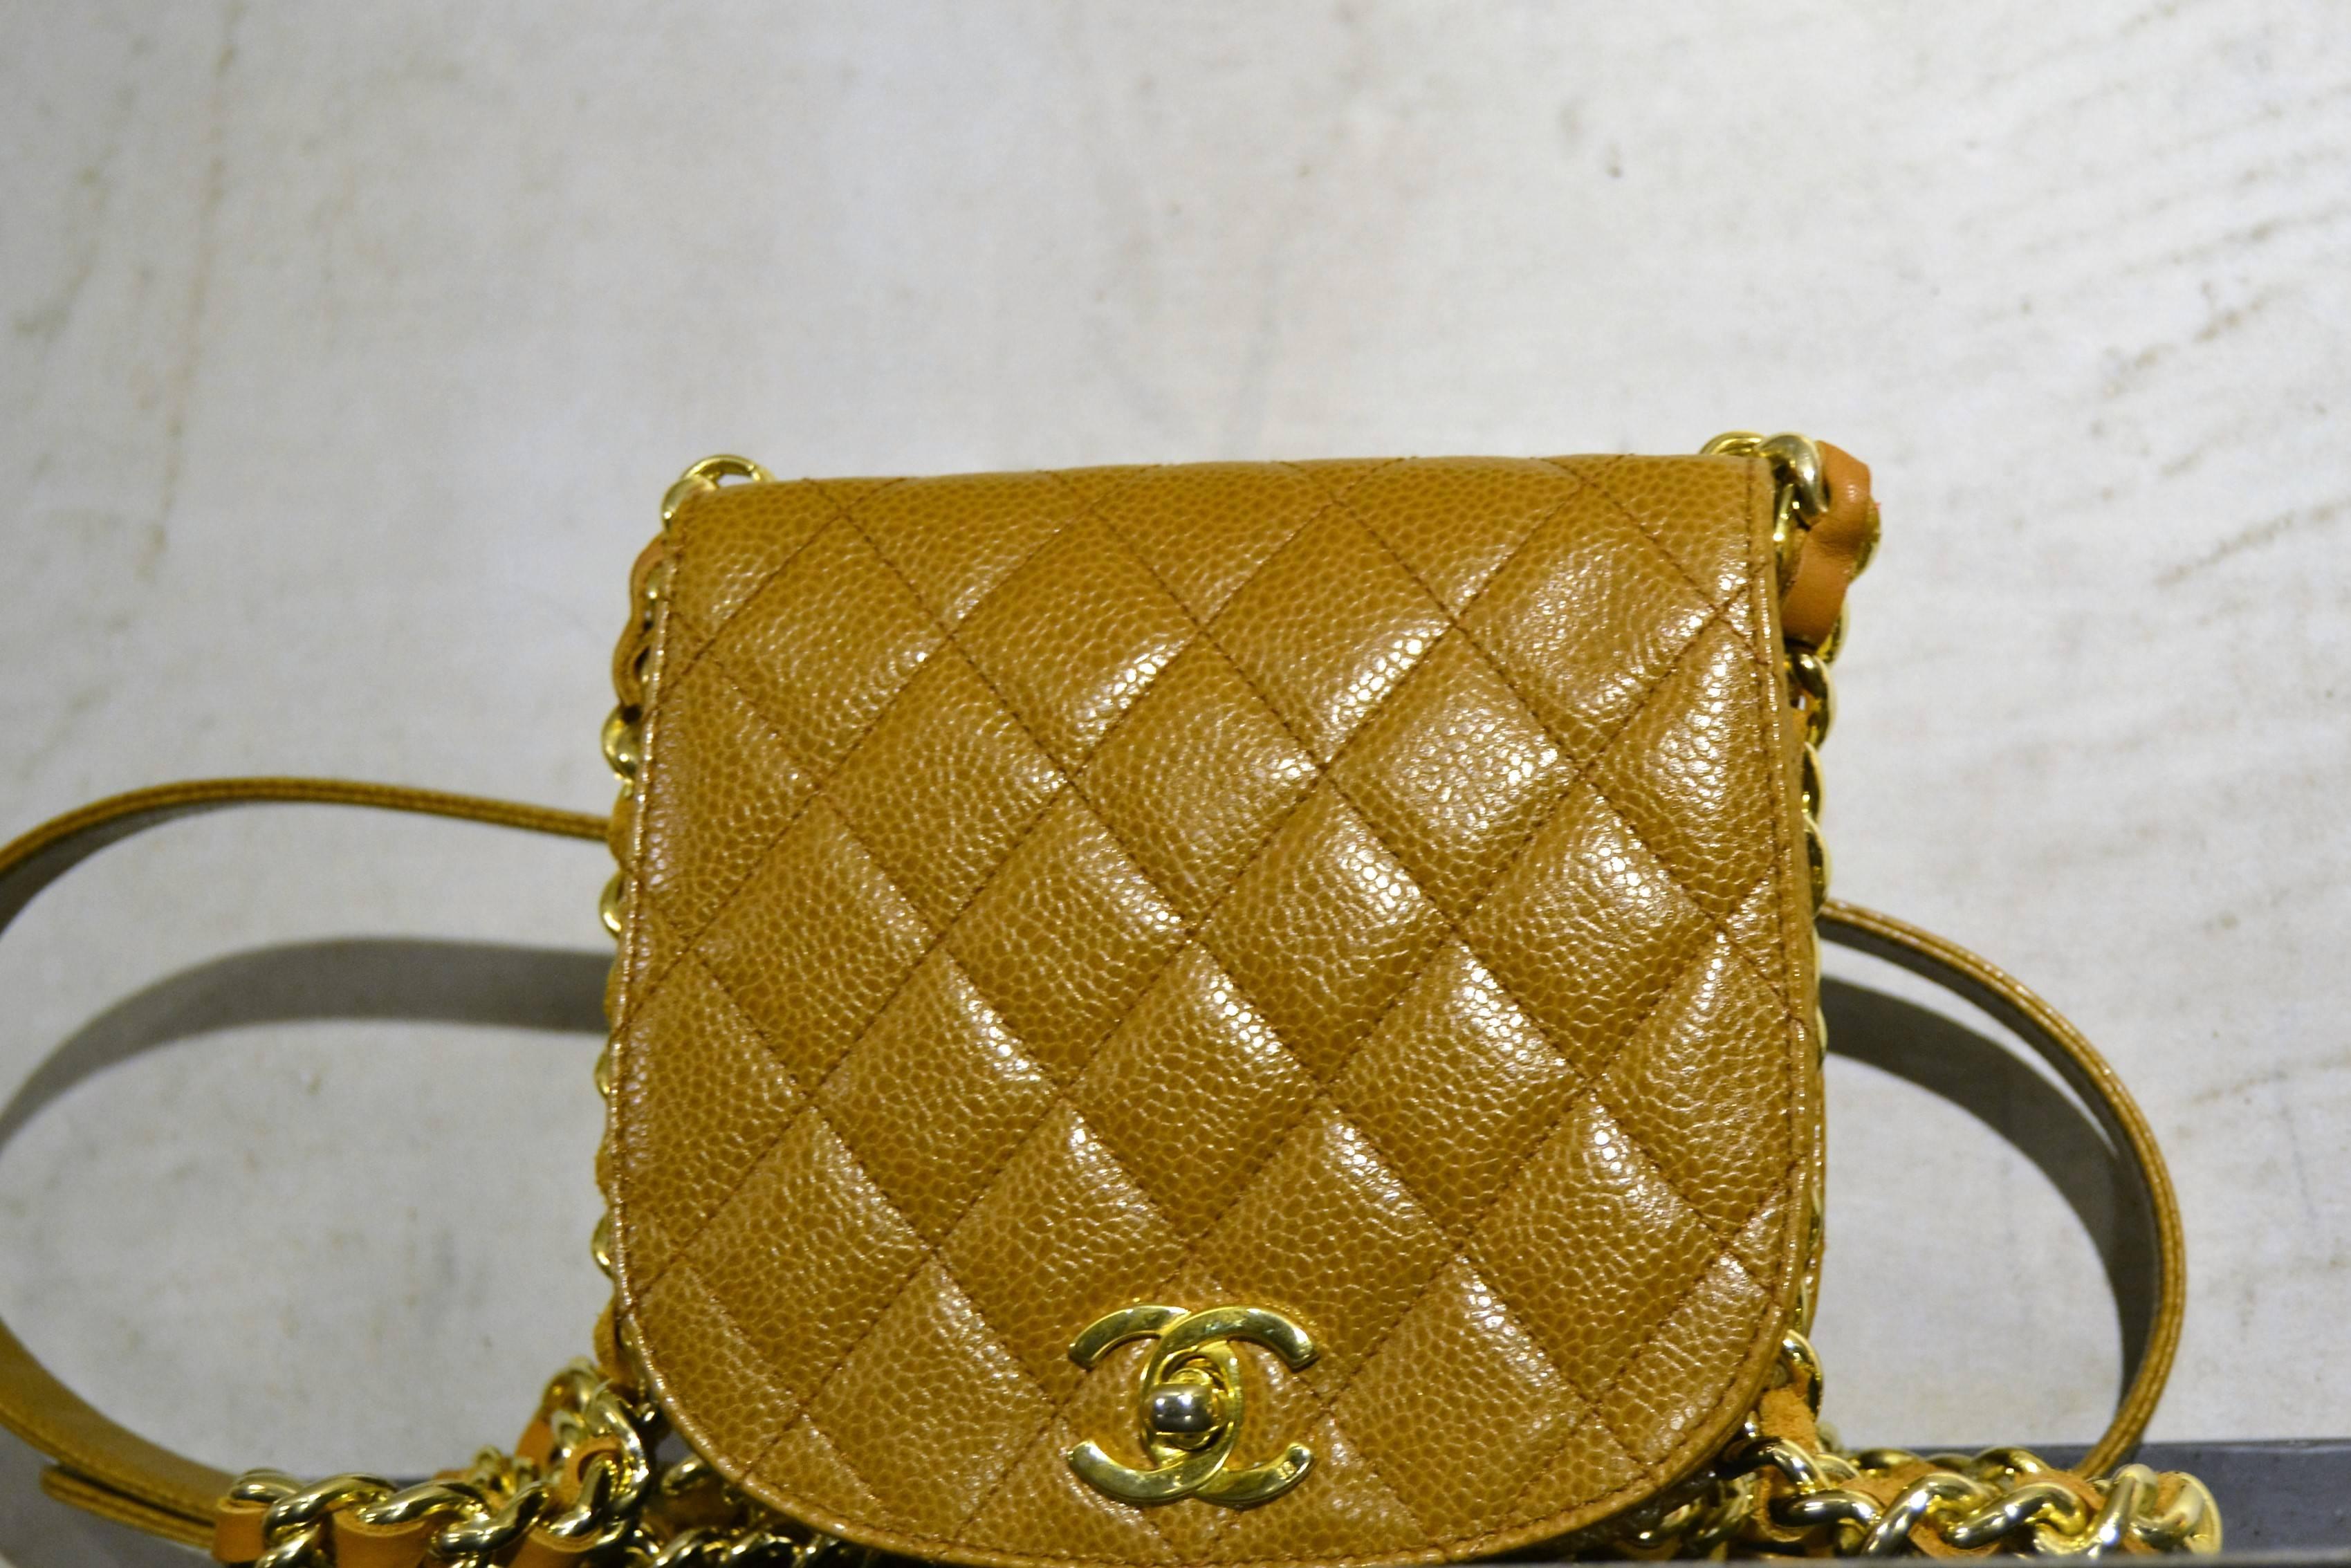 1990s Chanel beige fanny pack with shoulder bag

Amazing fanny pack shoulder bag Chanel lambskin bag. Gold hardware